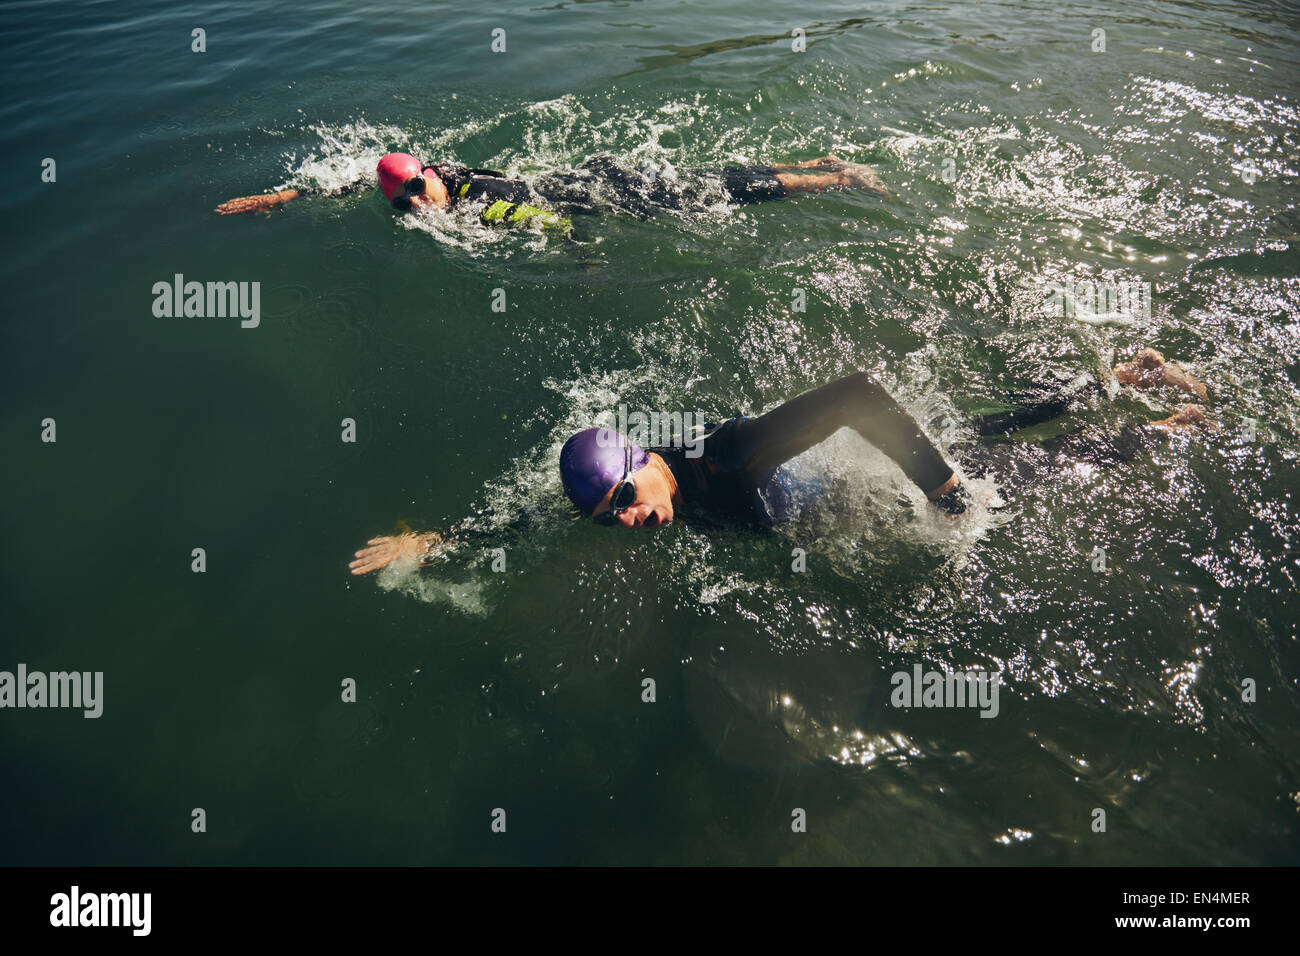 Konkurrenten im Schwimmen Event von einem Triathlon-Wettbewerb kämpfen. Stockfoto